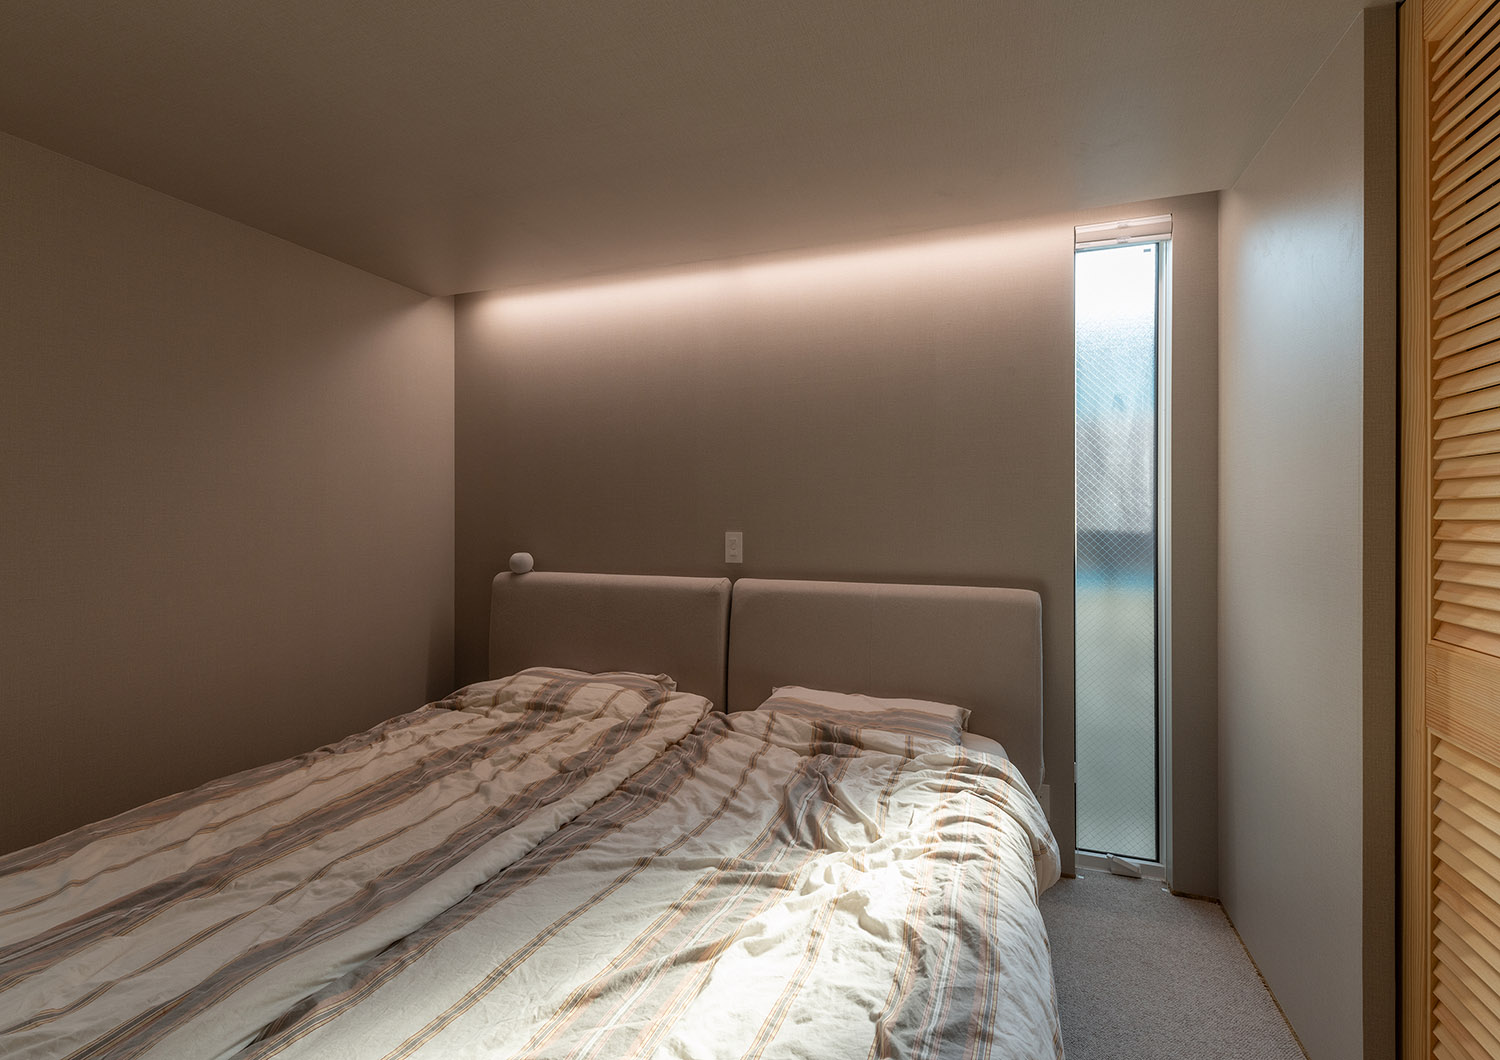 壁際に間接照明を取り付けたスリット窓のあるおしゃれな寝室・デザイン住宅